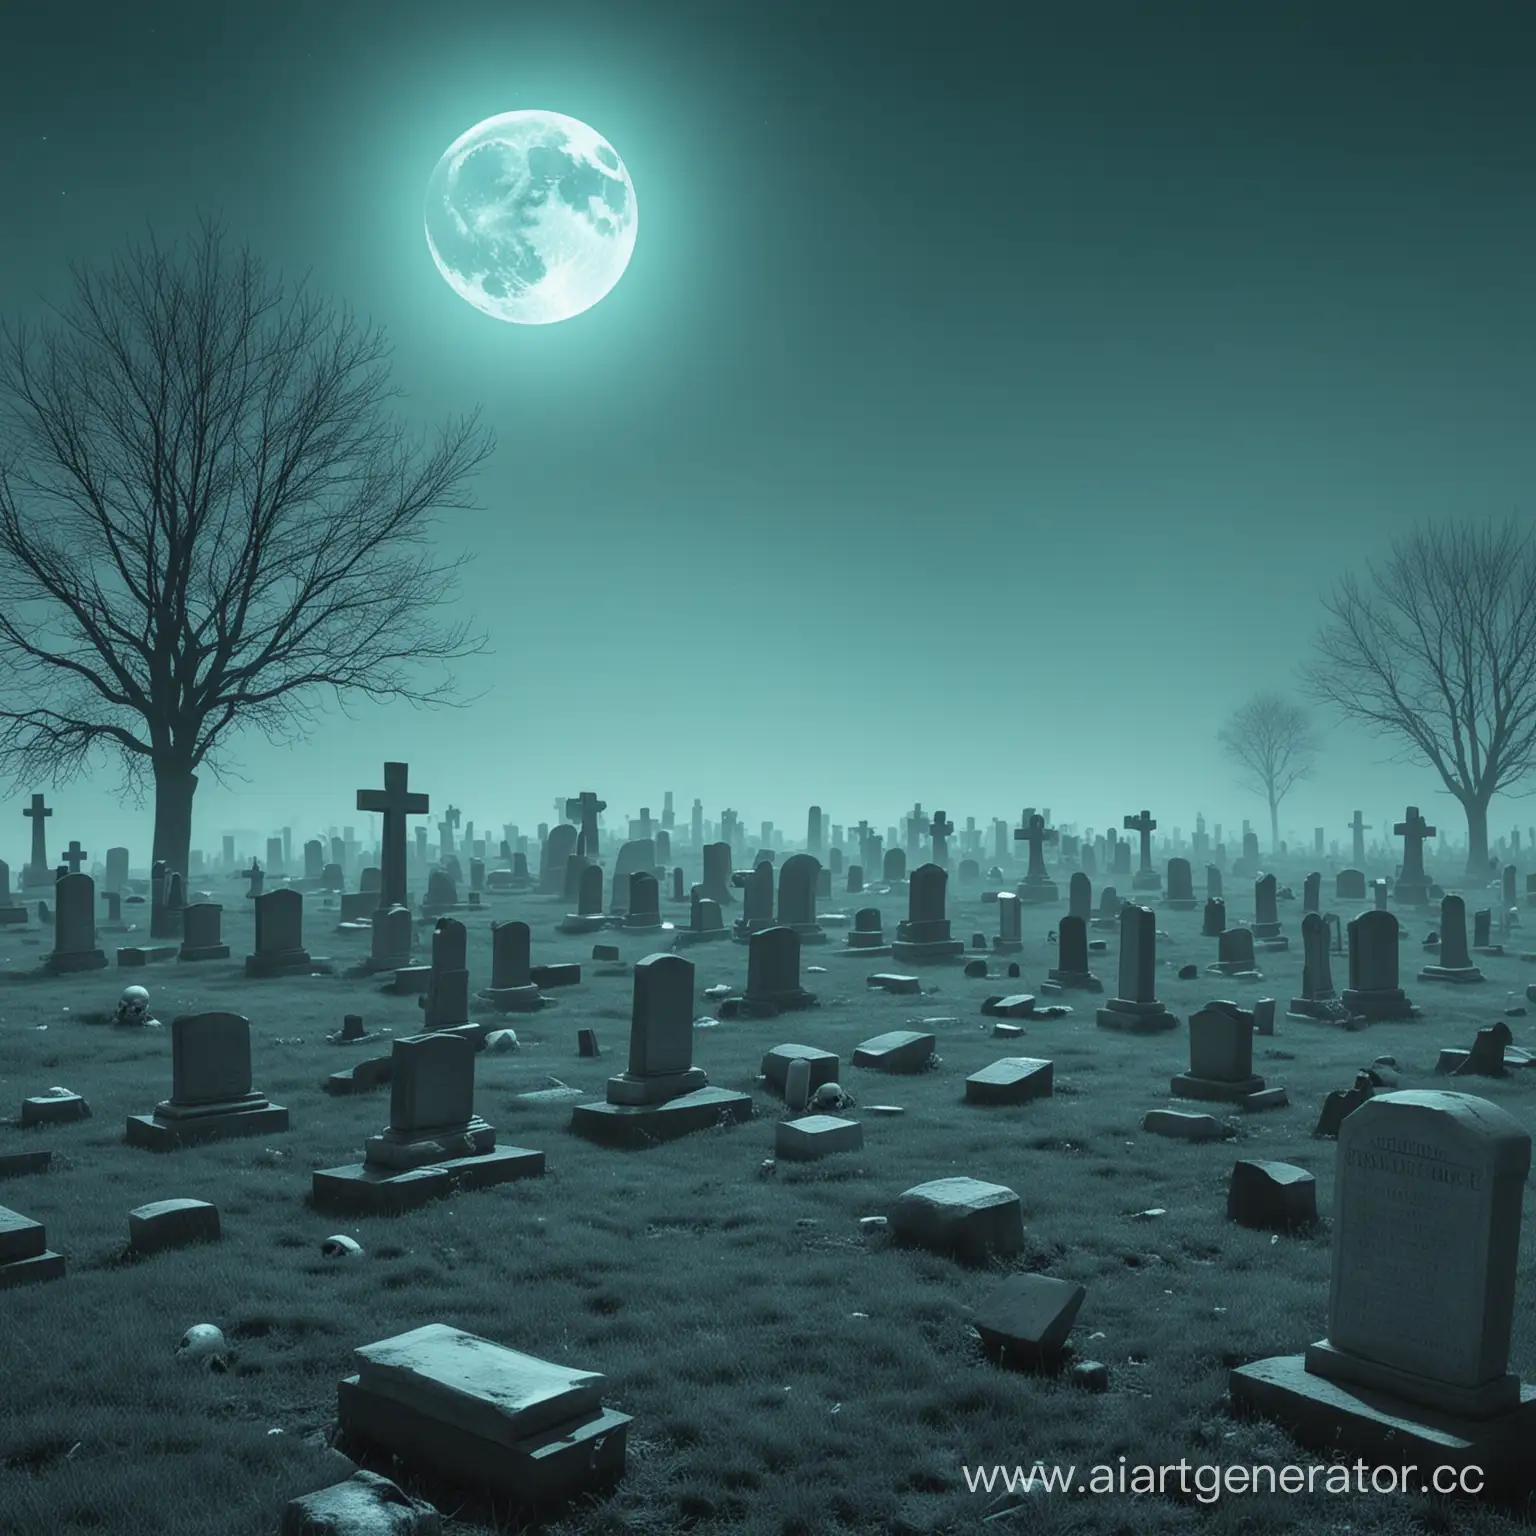 Кладбище, загробное полнолуние с бирюзовыми рассветом, души, черепа, смерть, туман